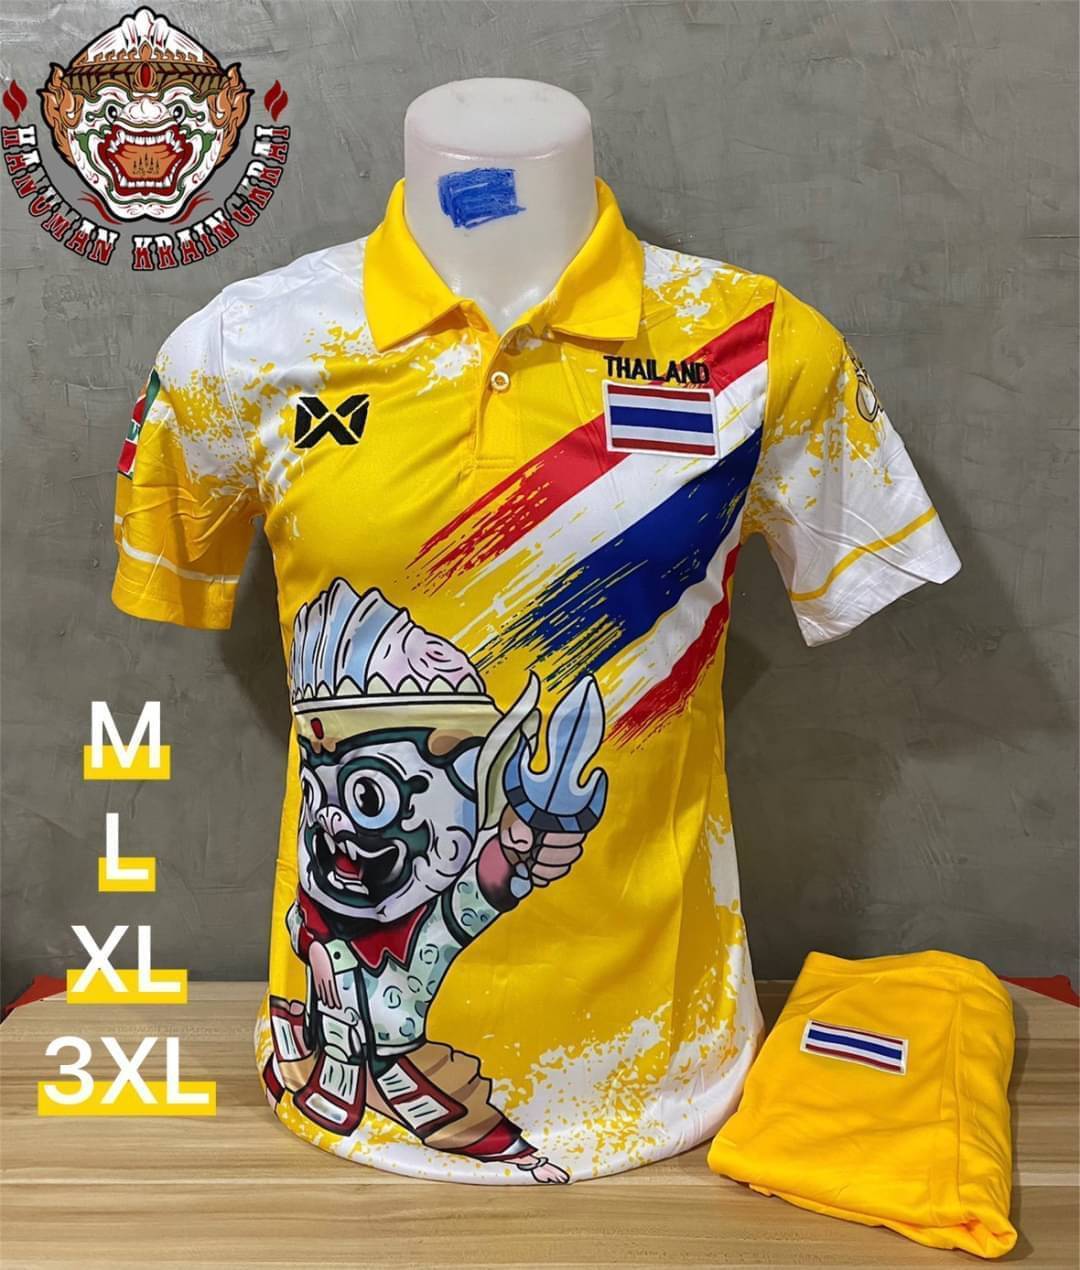 เสื้อกีฬา ชุดกีฬาผู้ชาย ทีมชาติไทย ลายกราฟฟิก 2021/2022 ถูกคุ้มสุดๆ (เสื้อ+กางเกง)